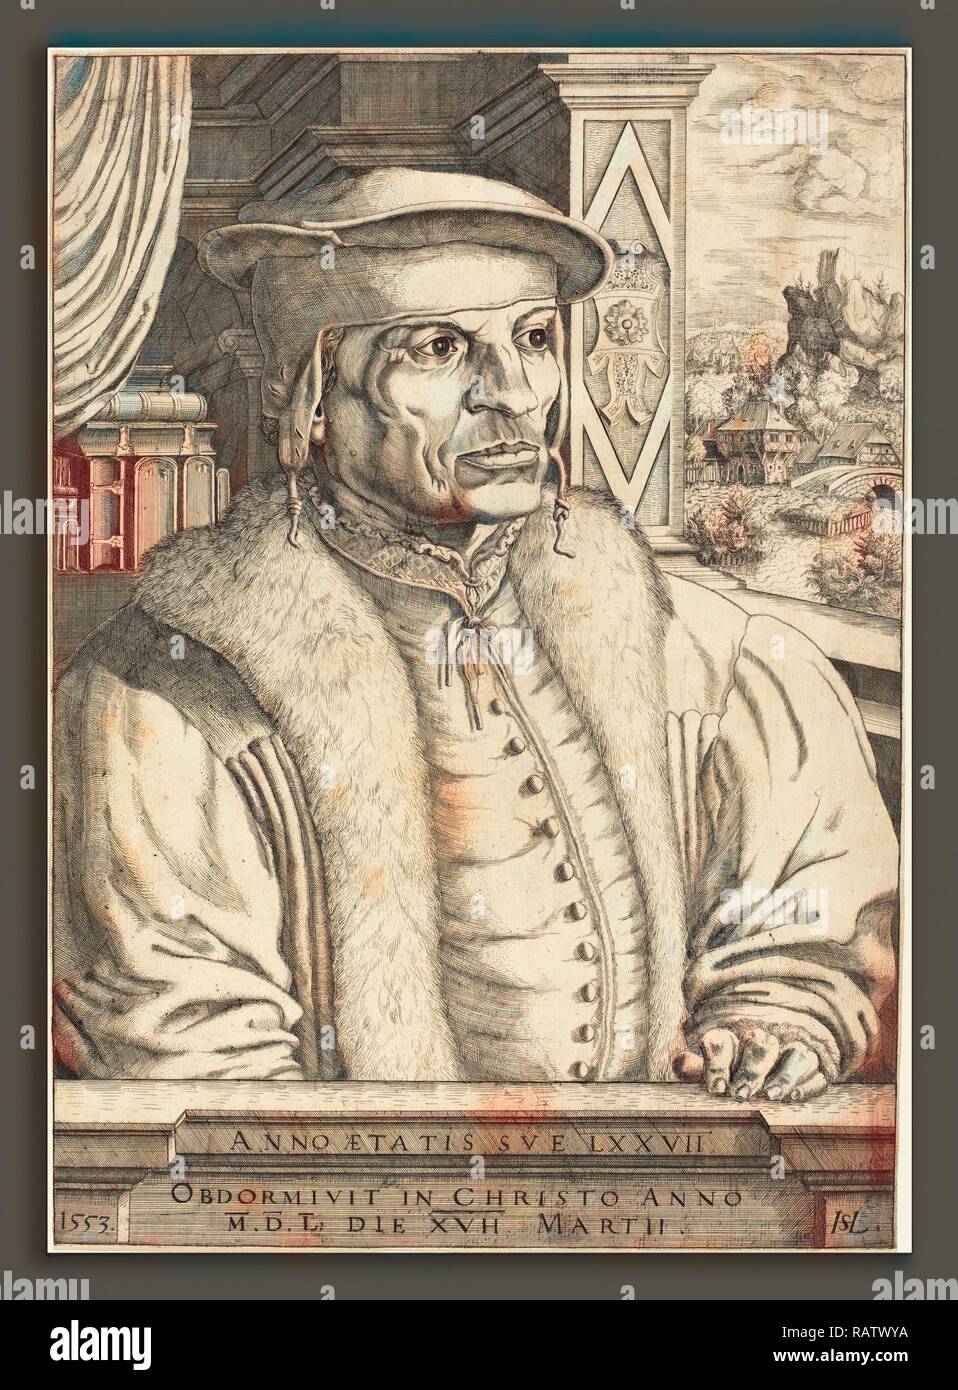 hans-sebald-lautensack-german-1524-1561-1566-leonard-von-eckh